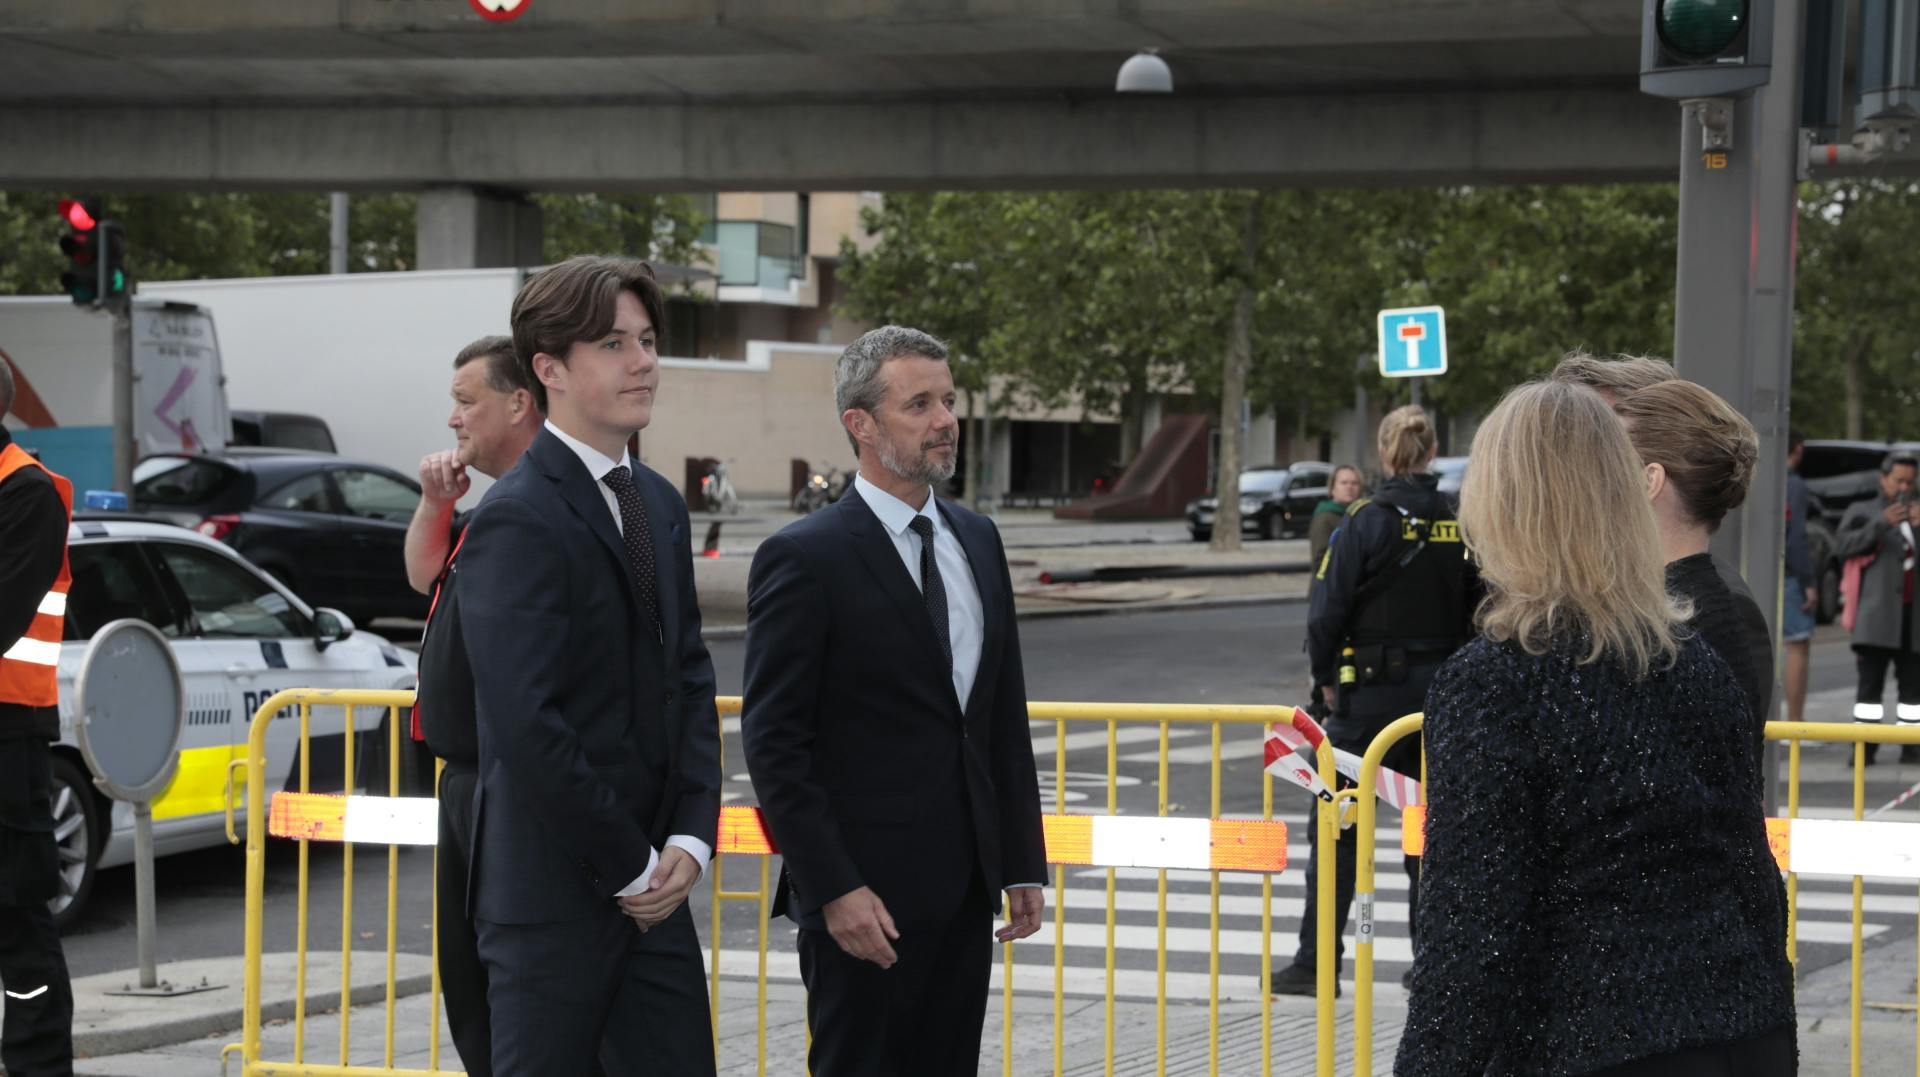 Kronsprins Frederik og prins Christian ankommer til mindehøjtidelighed ved Field's